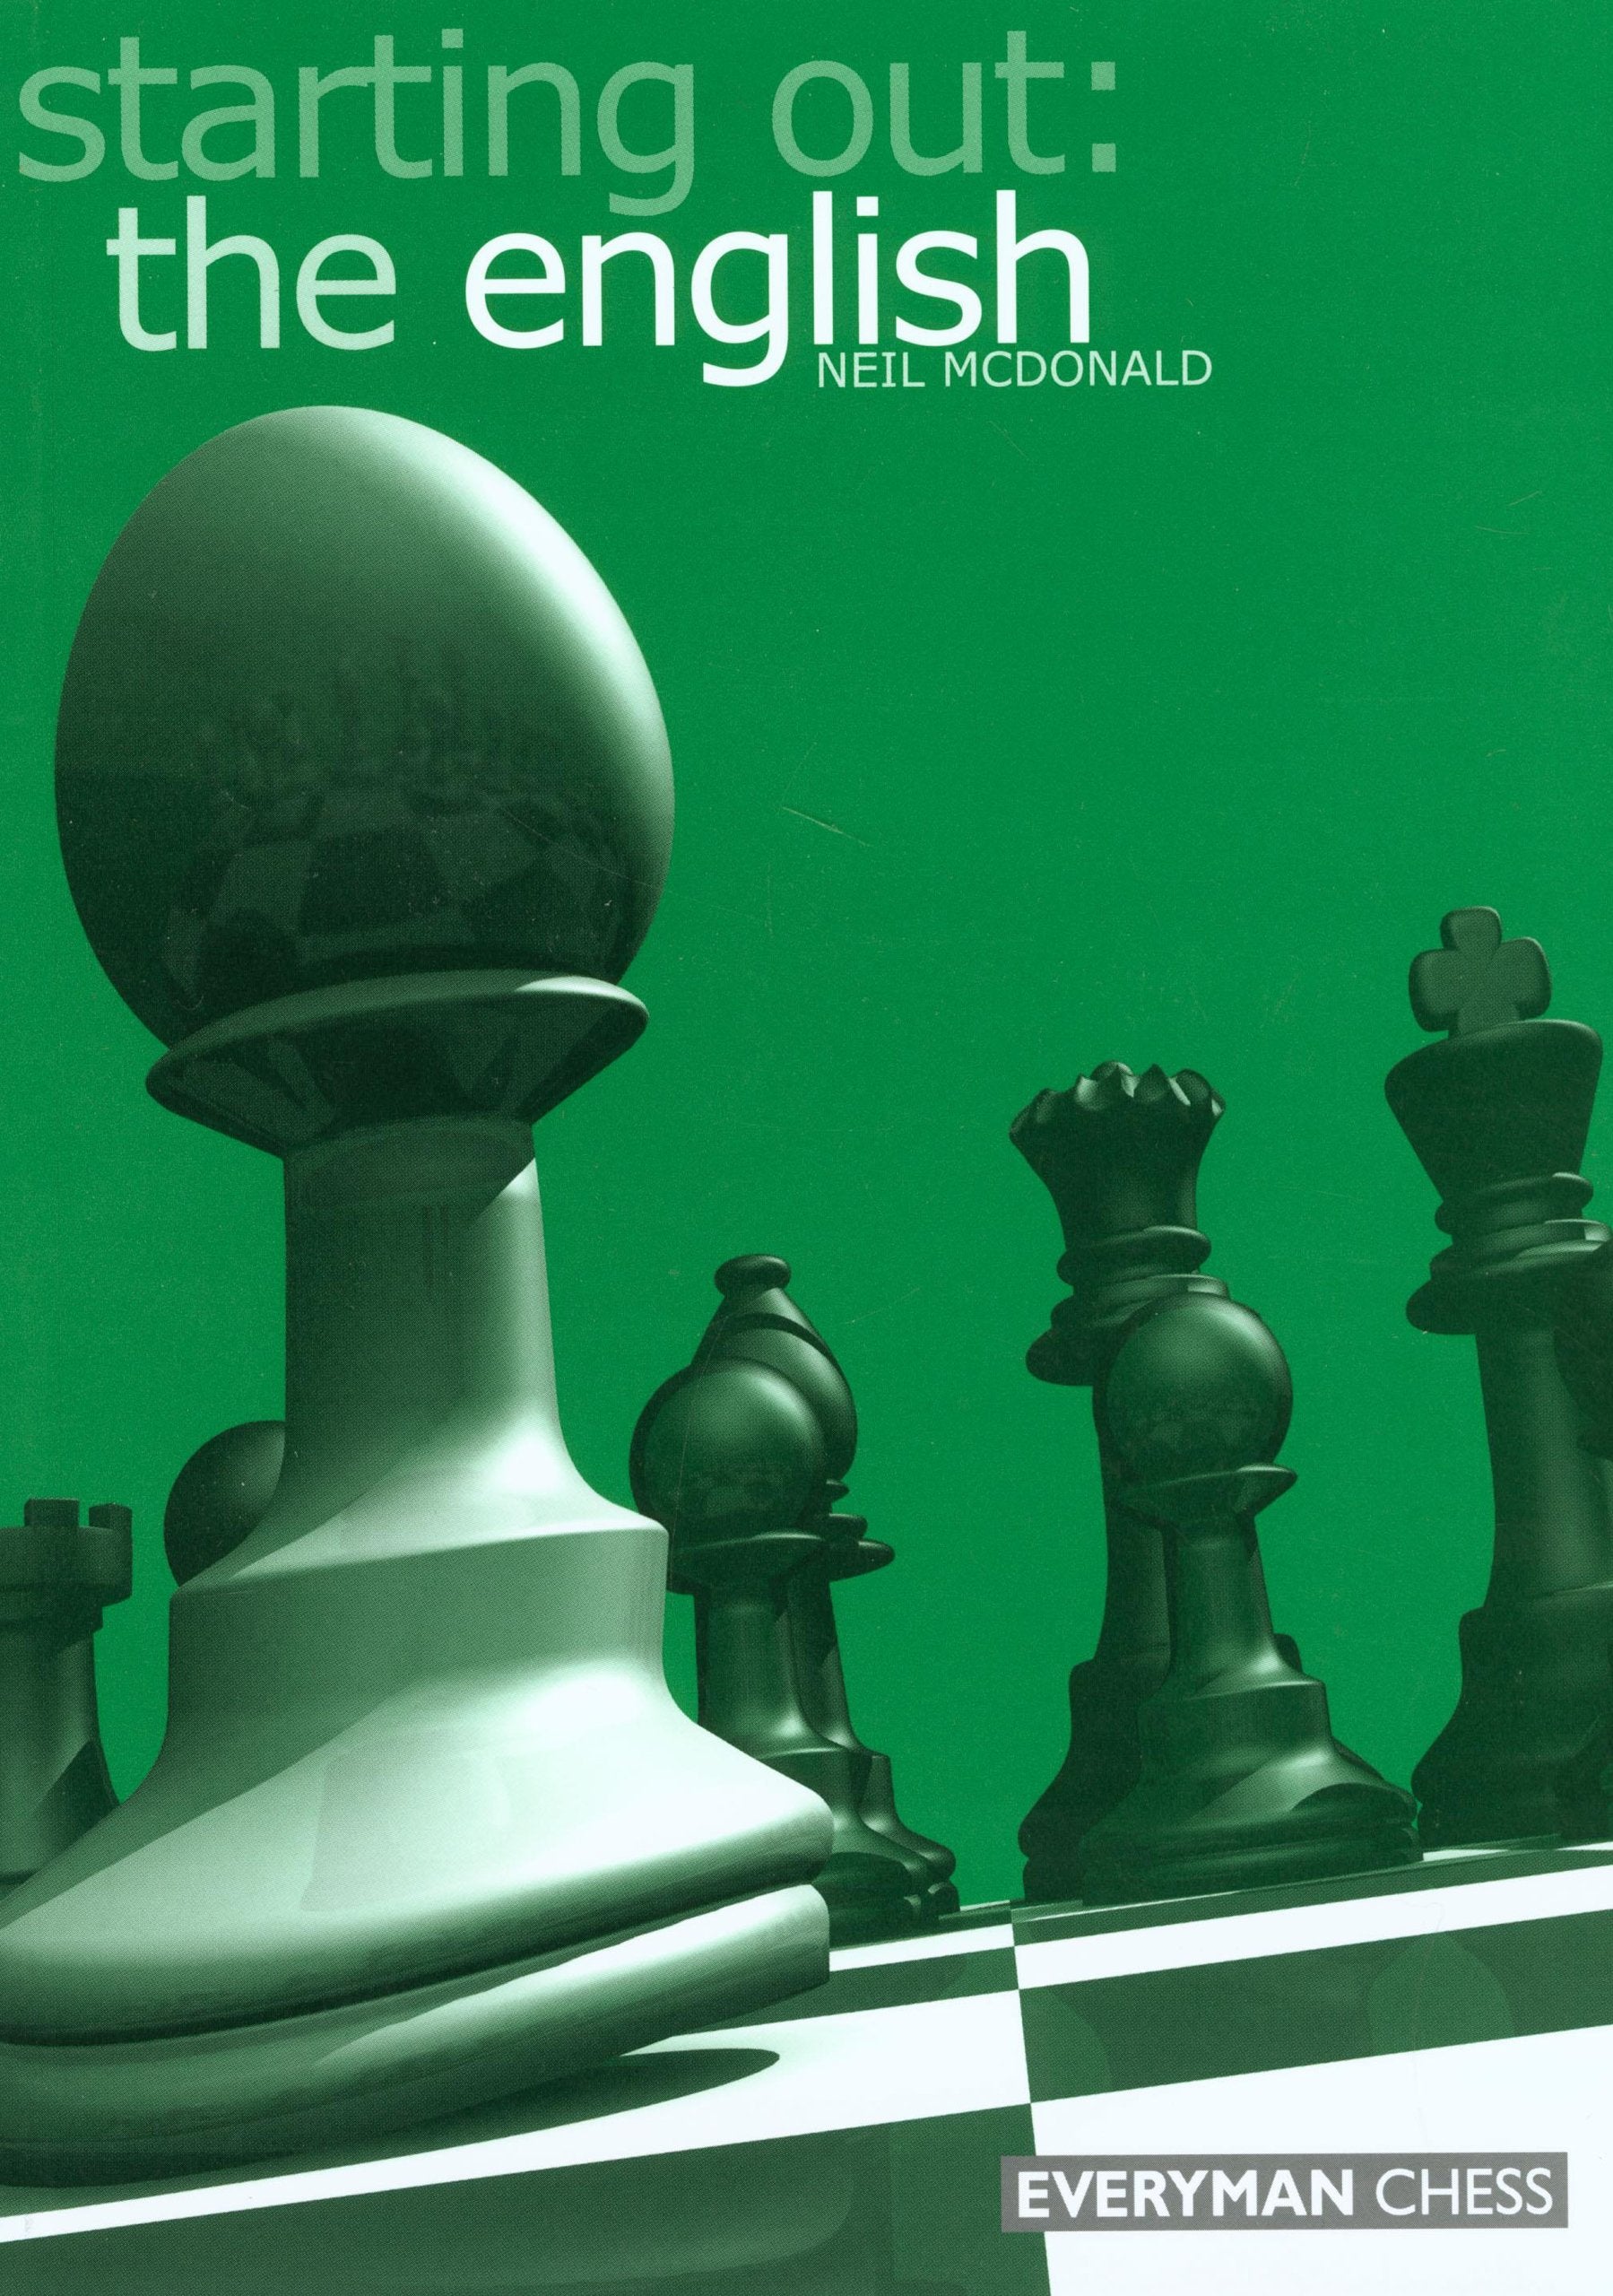 chessman  Tradução de chessman no Dicionário Infopédia de Inglês